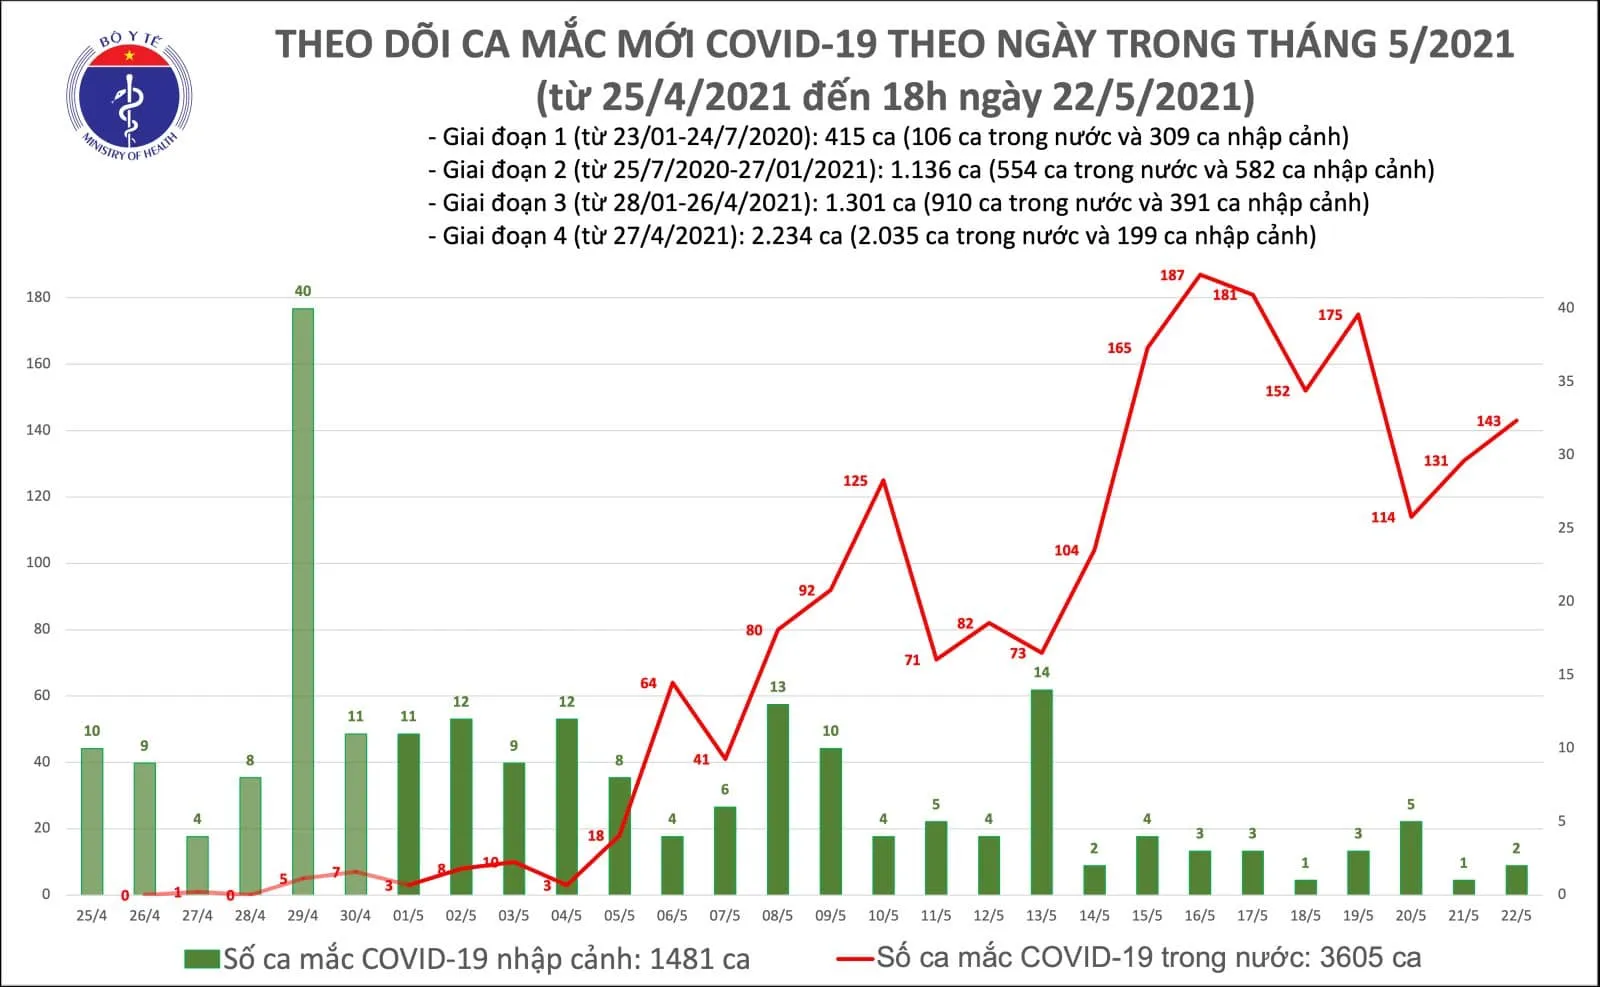 Tối 22/5: Thêm 73 ca mắc COVID-19 trong nước, Bắc Ninh và Bắc Giang chiếm 64 ca 1